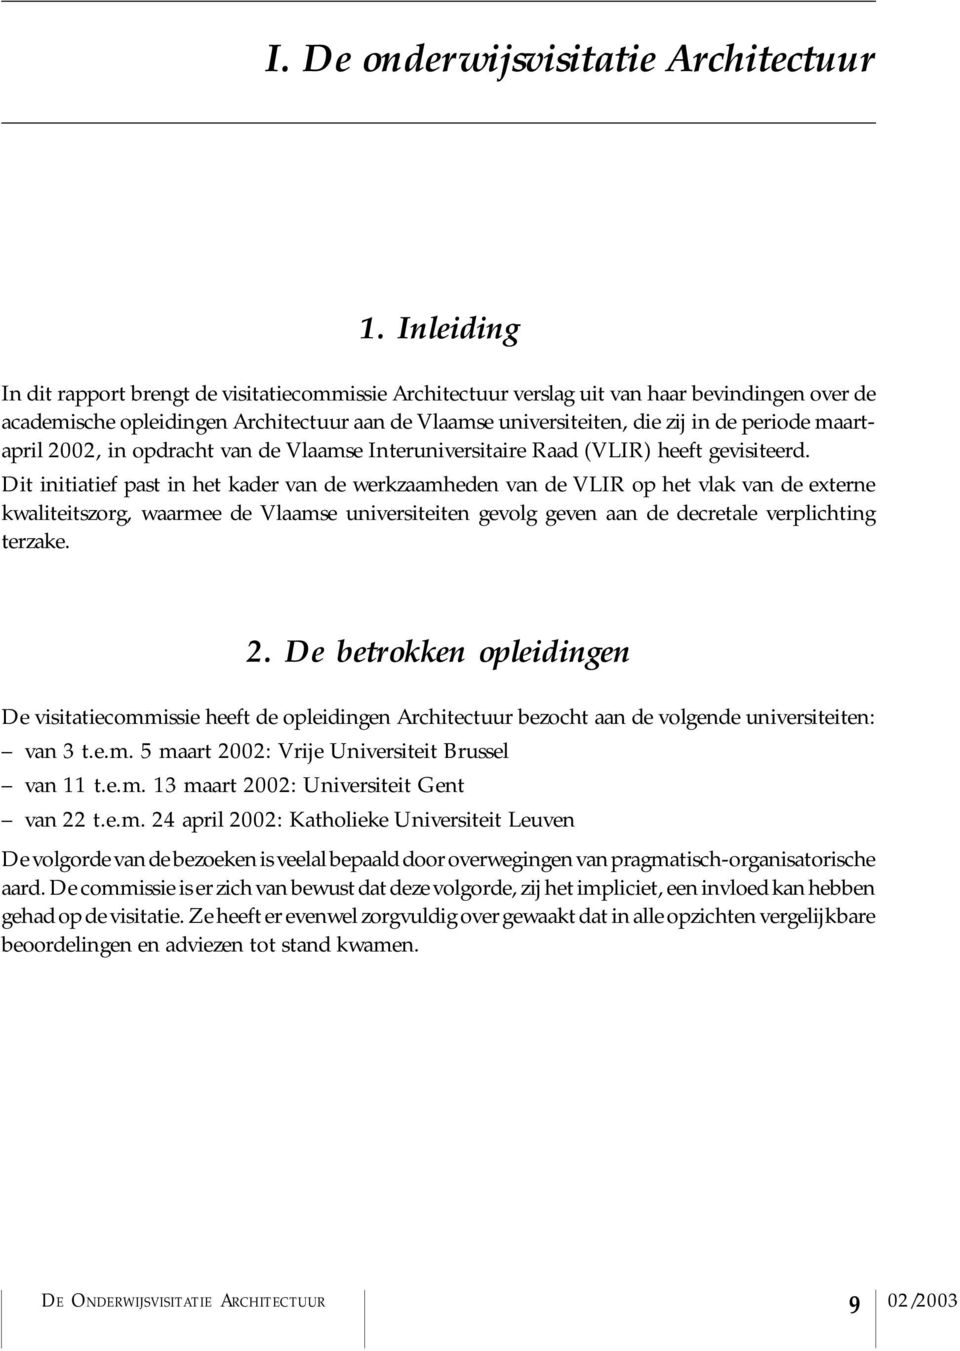 maartapril 2002, in opdracht van de Vlaamse Interuniversitaire Raad (VLIR) heeft gevisiteerd.